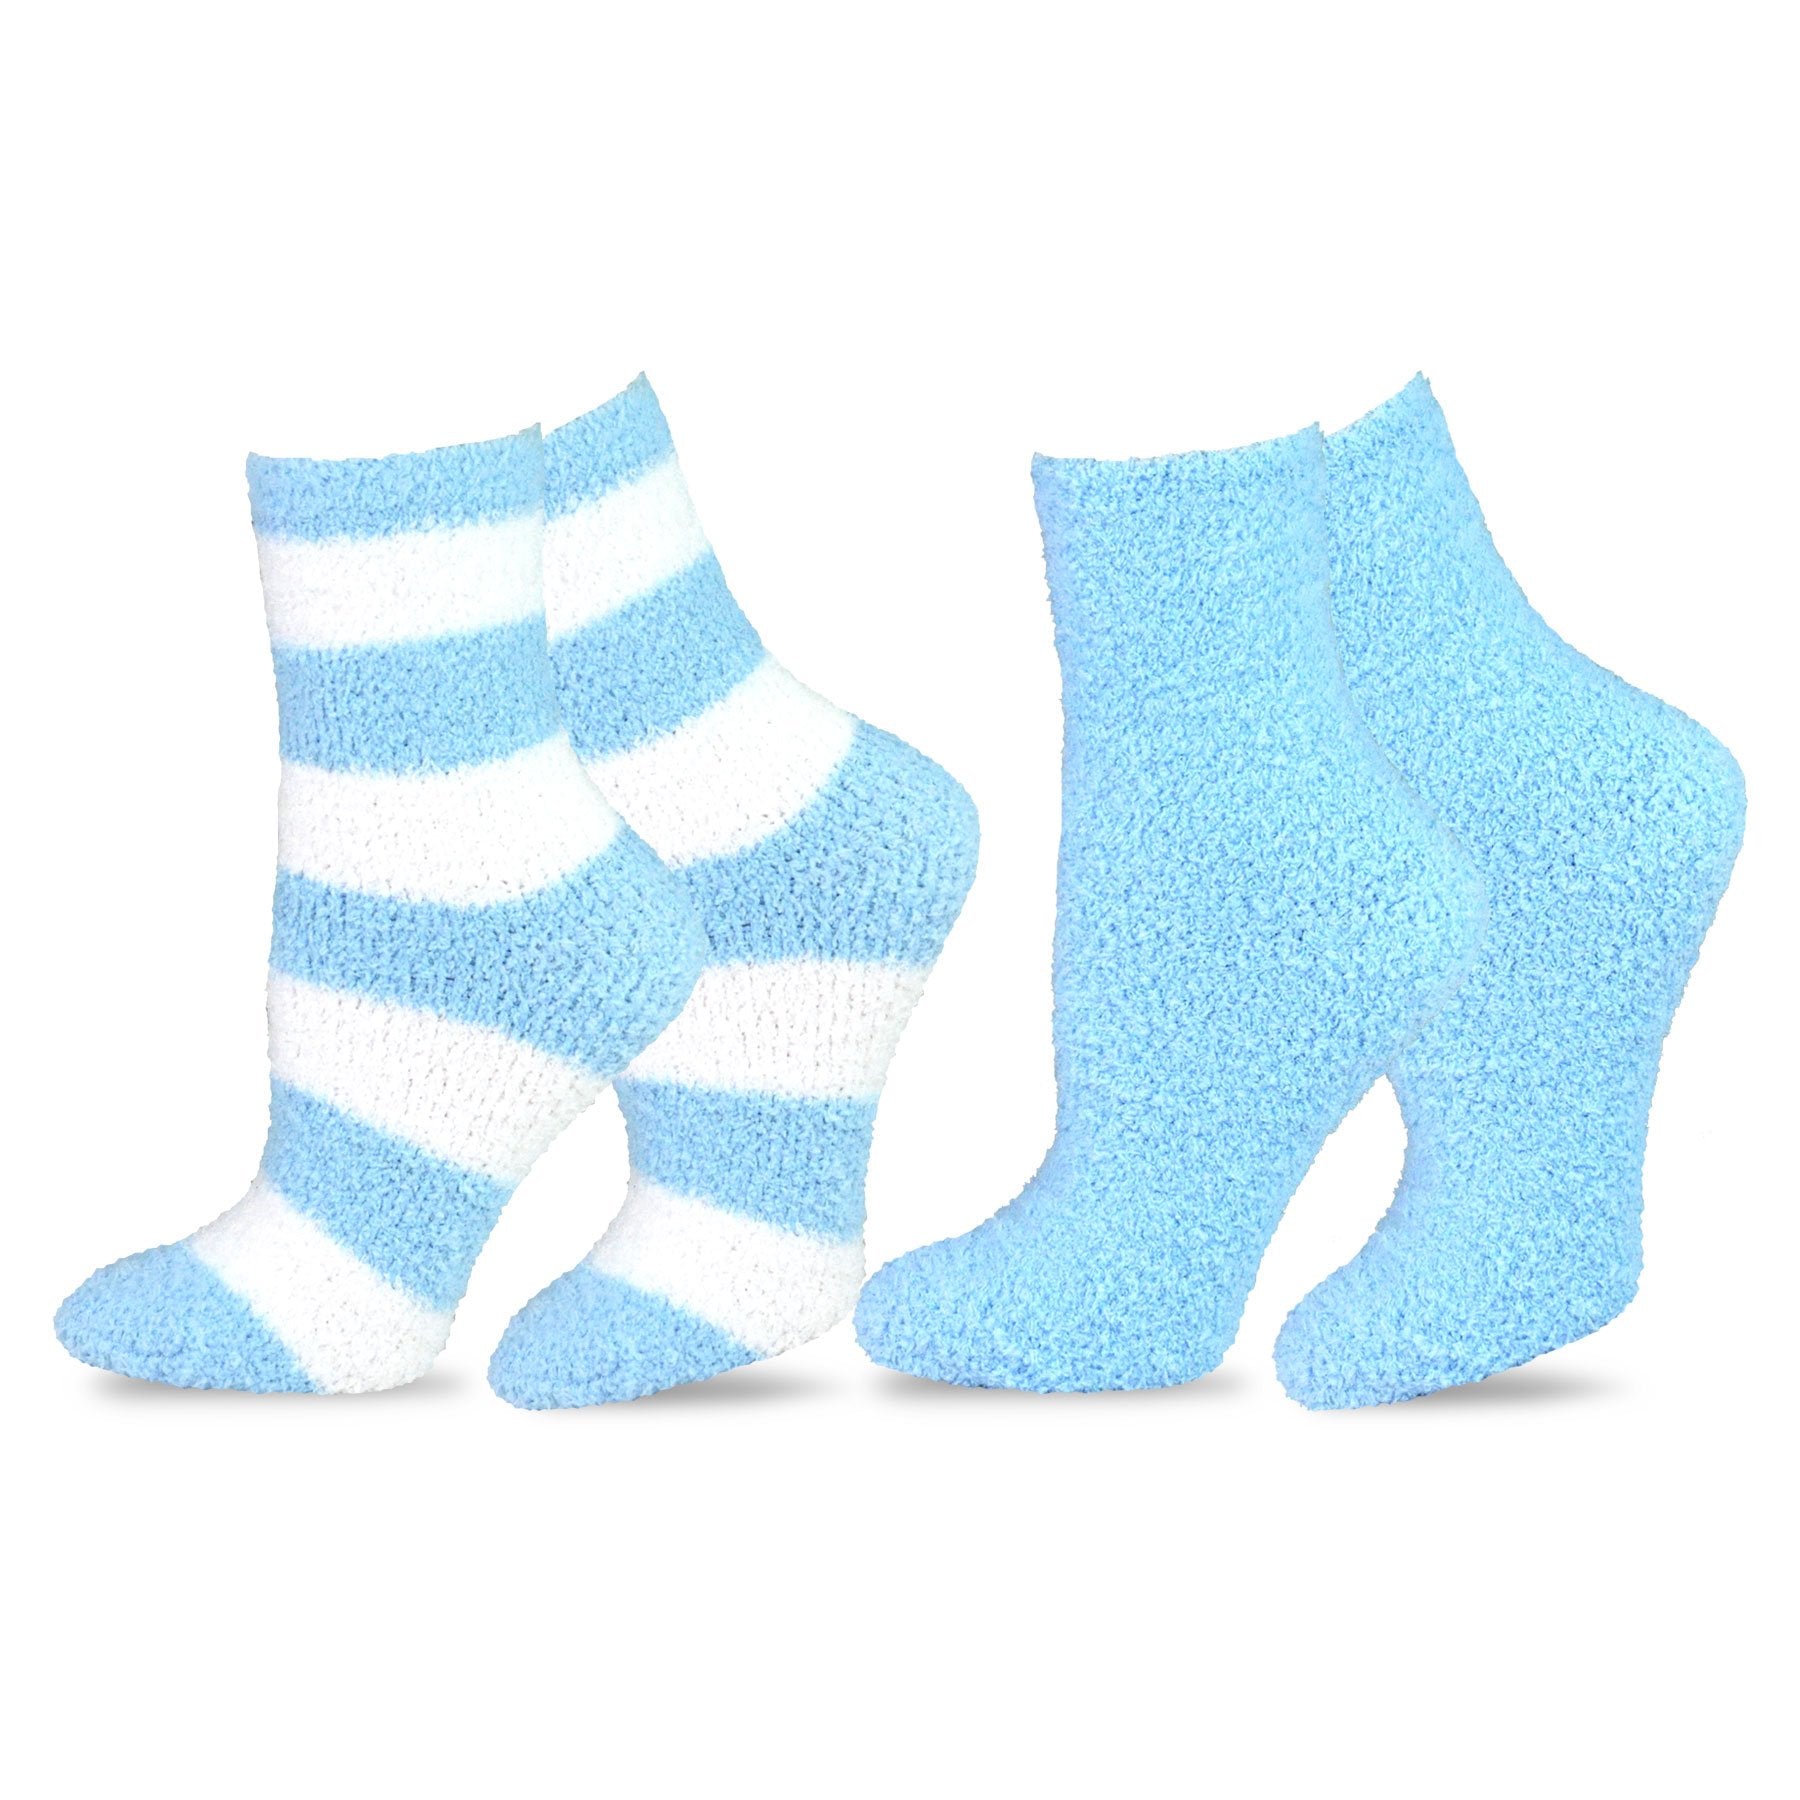 TeeHee Socks Women's Fuzzy Polyester Crew Light Blue 2-Pack (11190)